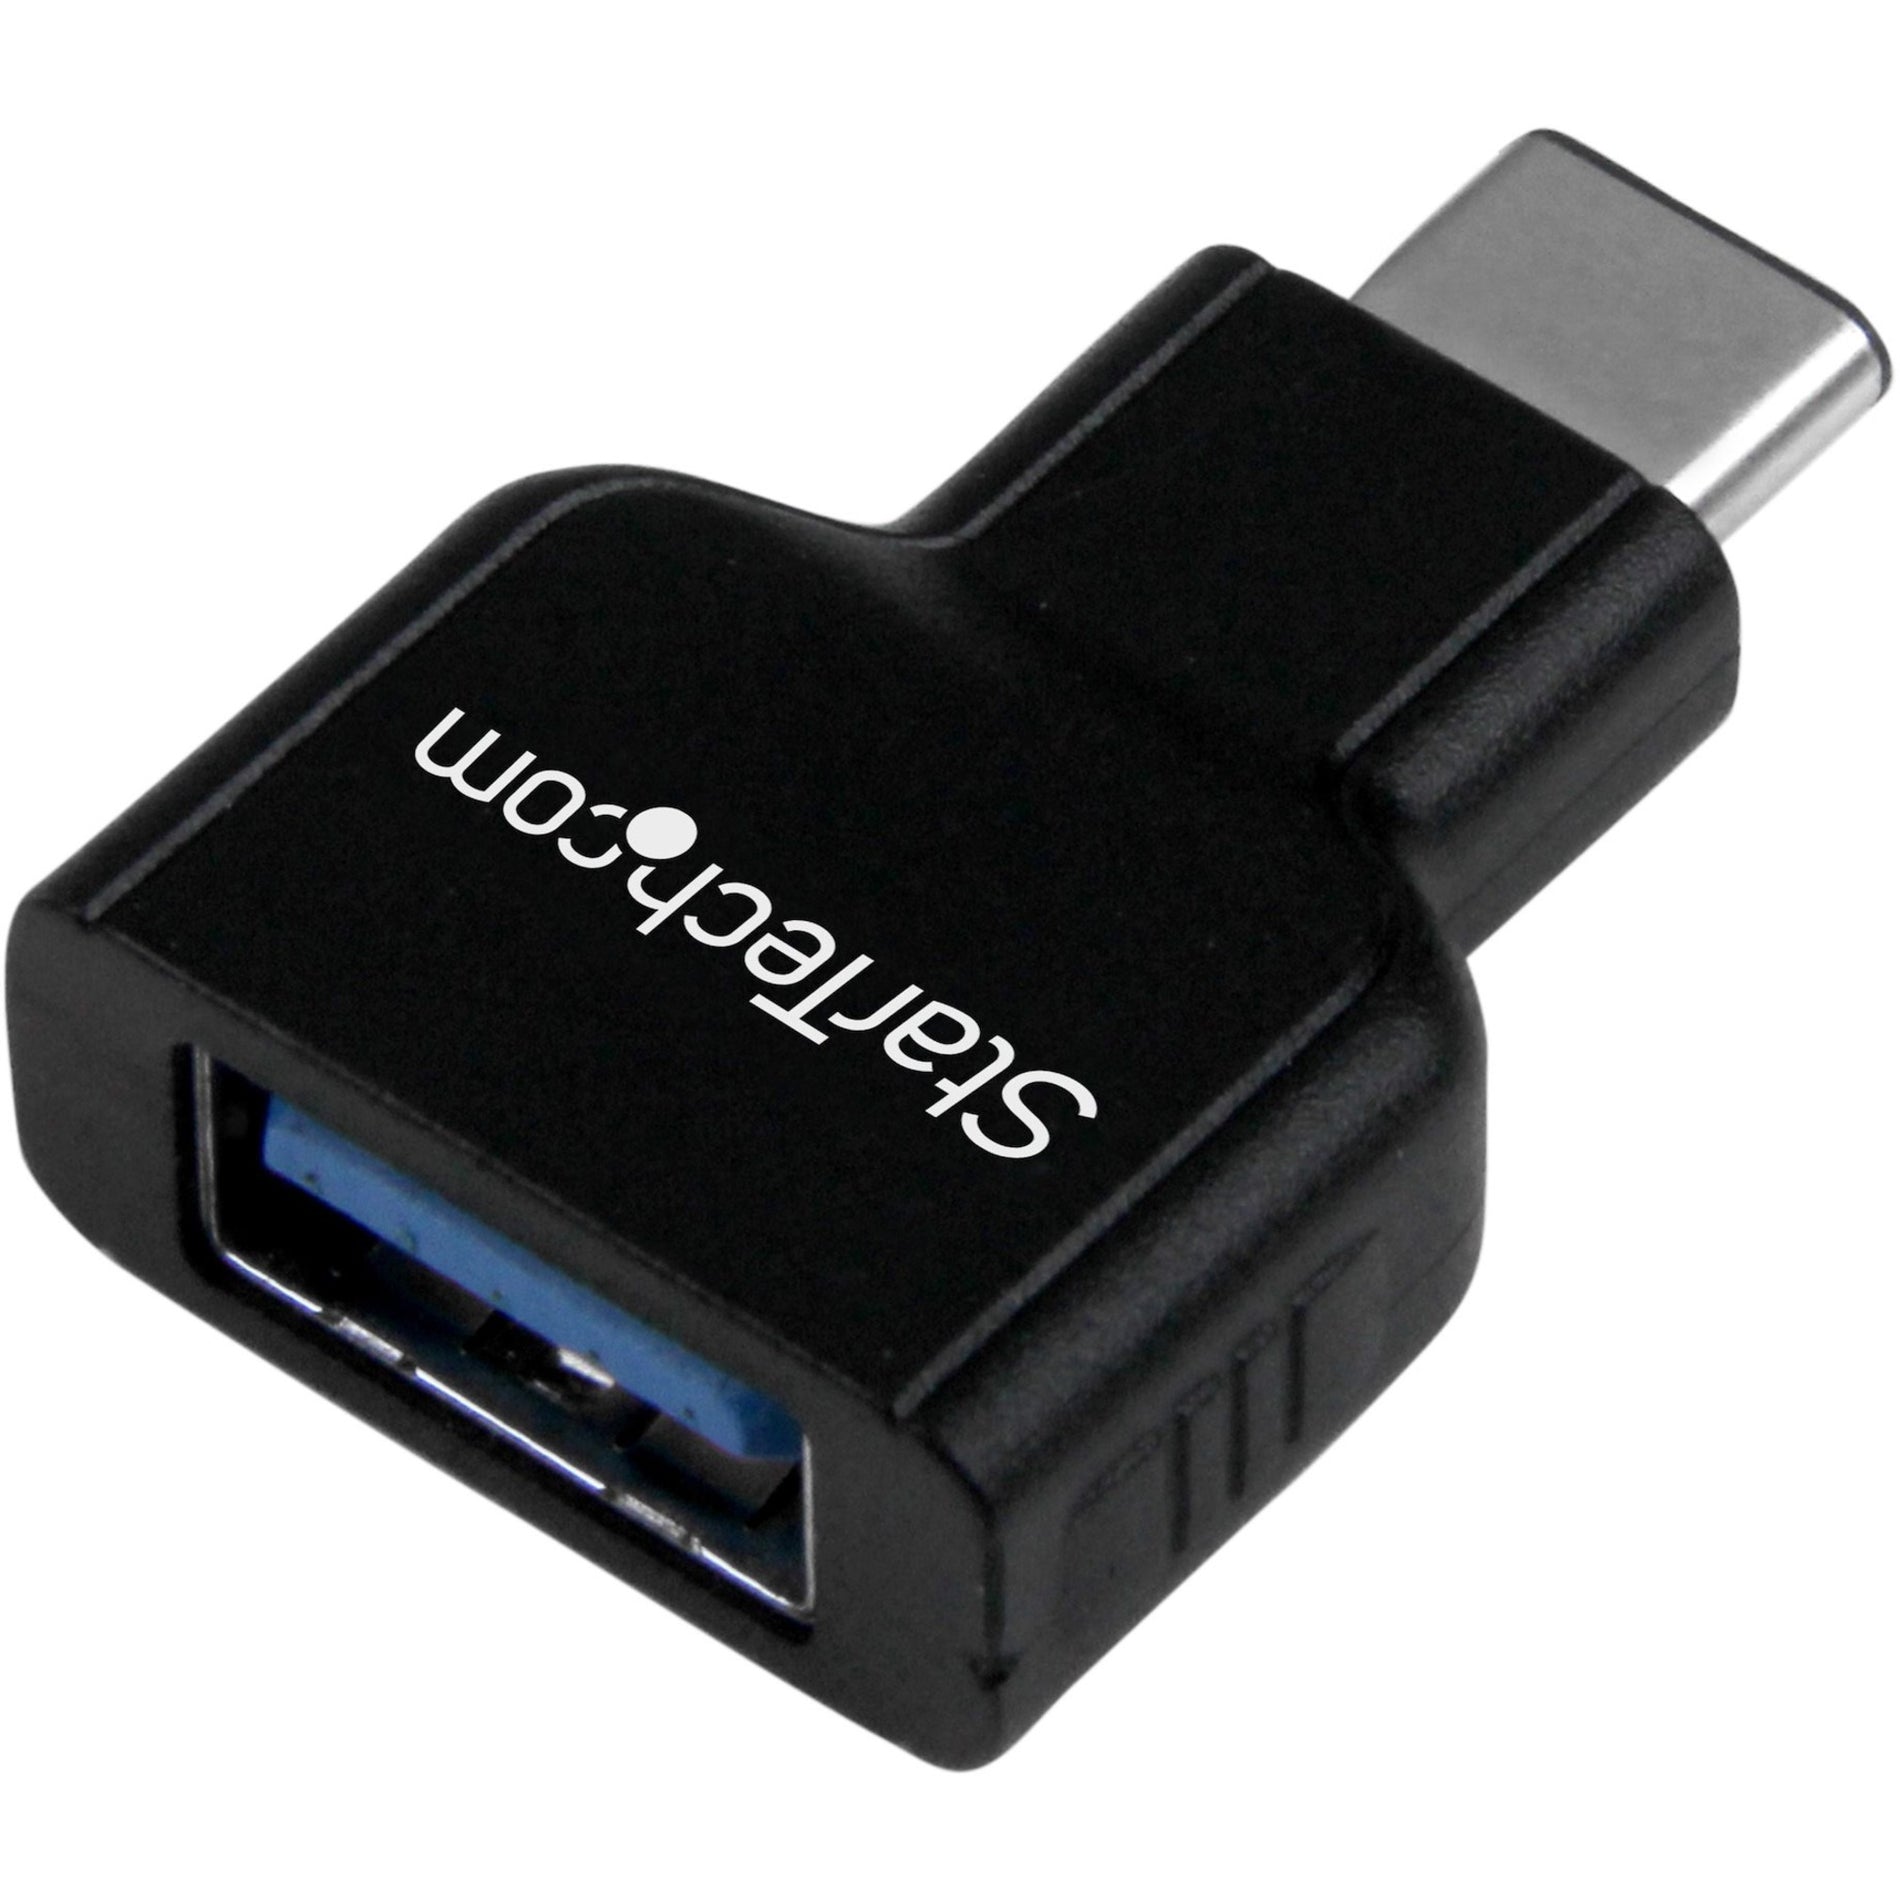 ستارتك.كوم محول USB-C إلى USB-A ذكر/أنثى - USB 3.0، الاتصال بأجهزة الكمبيوتر المحمولة بواجهة USB C مثل أبل ماك بوك، كروم بوك بيكسل وأكثر